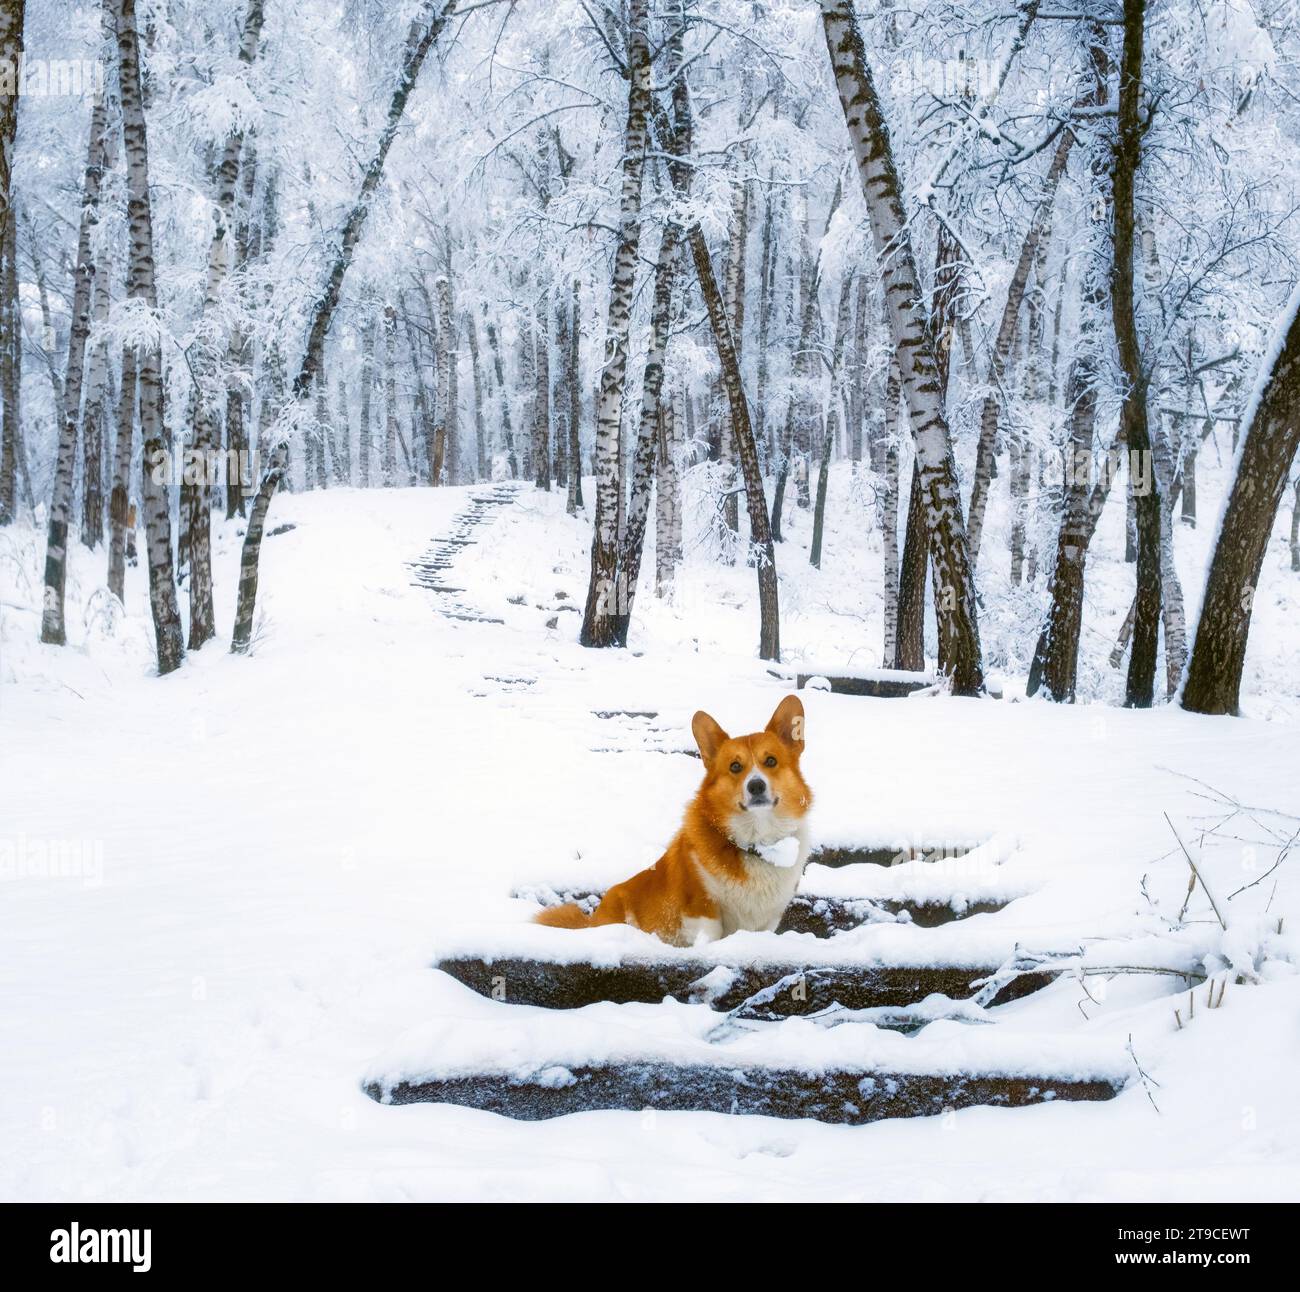 carino cucciolo di corgi gallesi pembroke rosso che cammina lungo un sentiero innevato sullo sfondo di una gelida foresta invernale di betulle Foto Stock